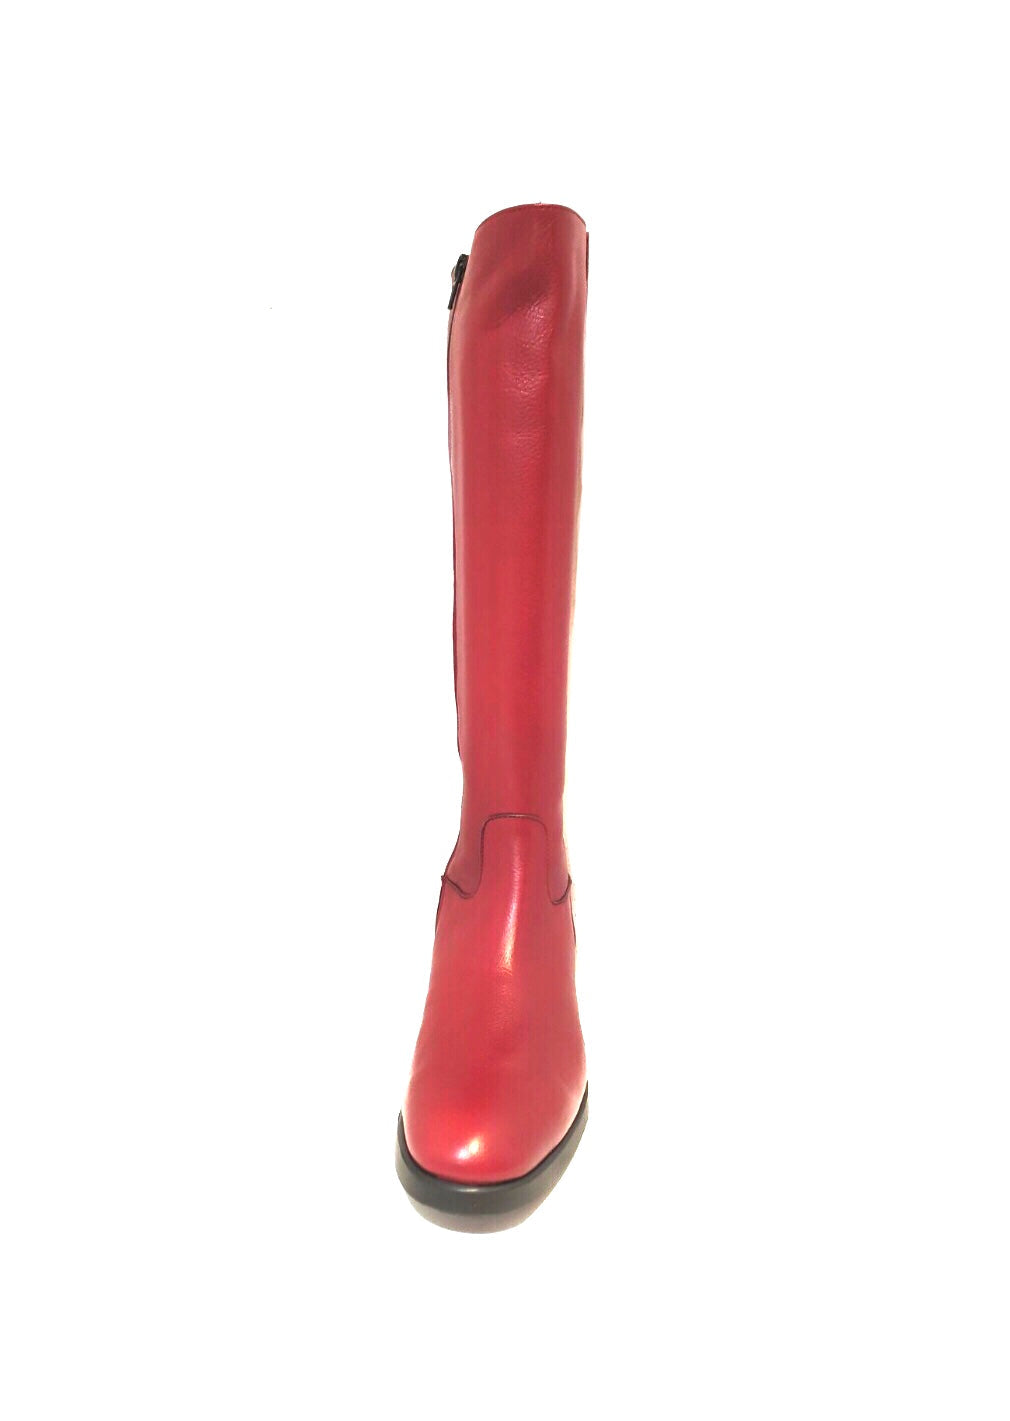 Wonders D-9343 Rubi Red Knee High Zip Boot Made In Spain